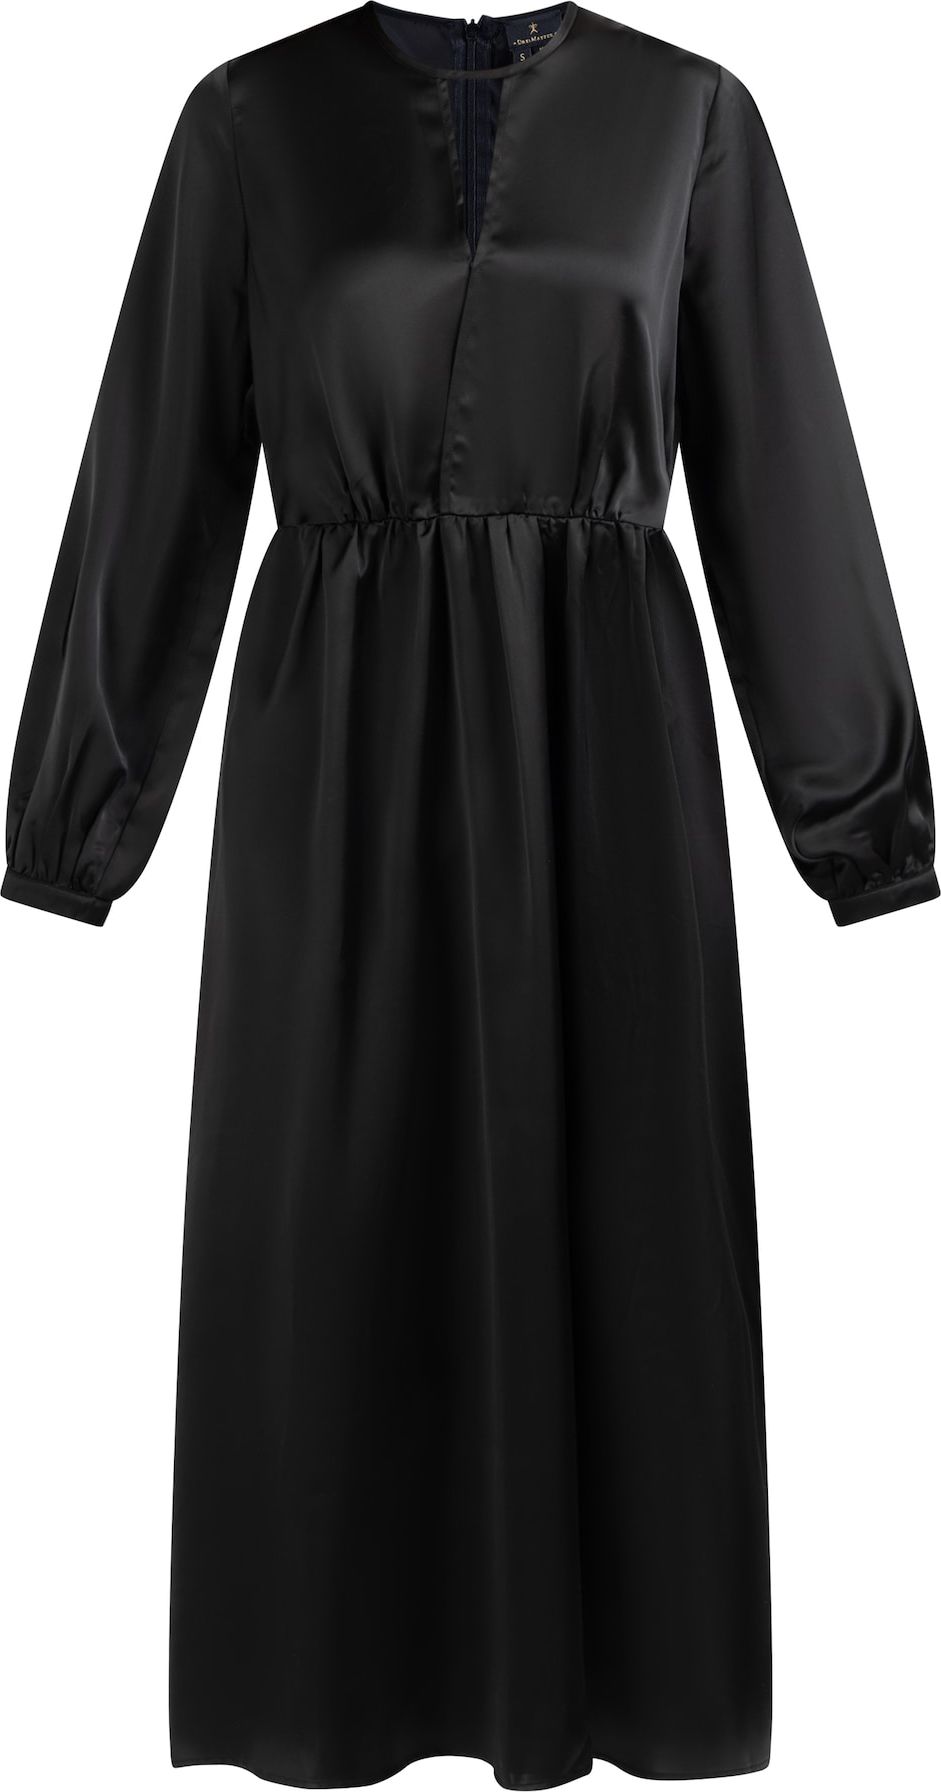 DreiMaster Klassik Společenské šaty černá